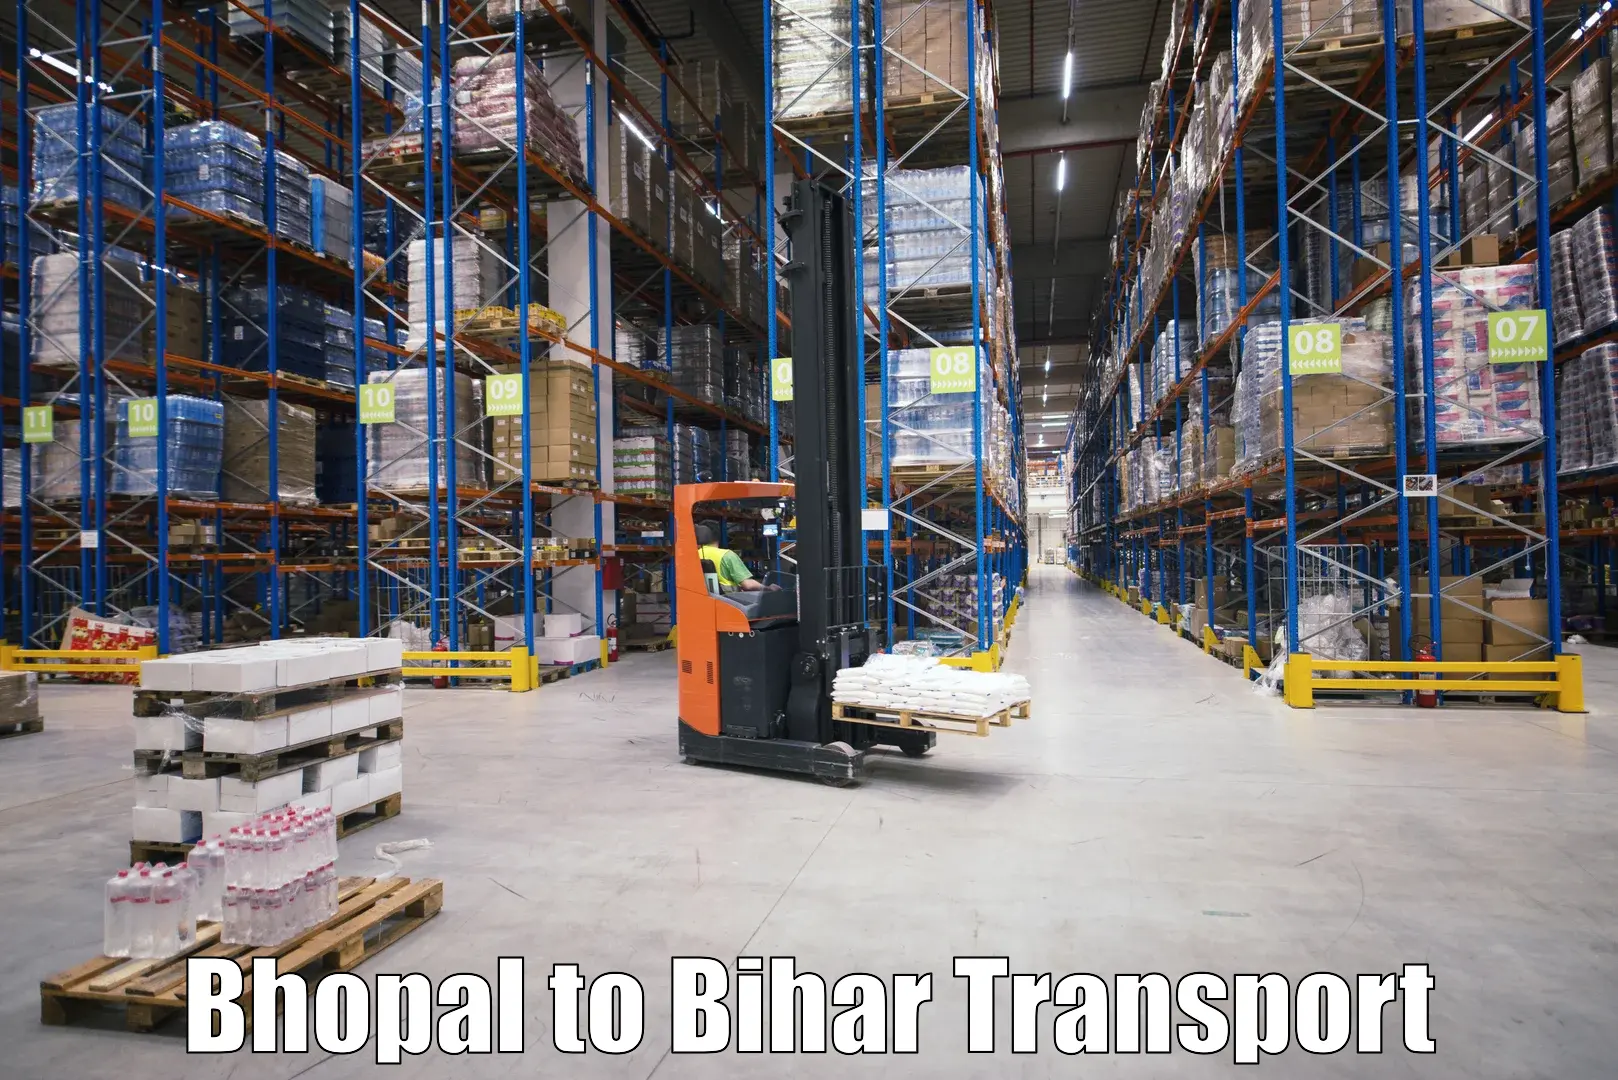 Furniture transport service Bhopal to Thakurganj